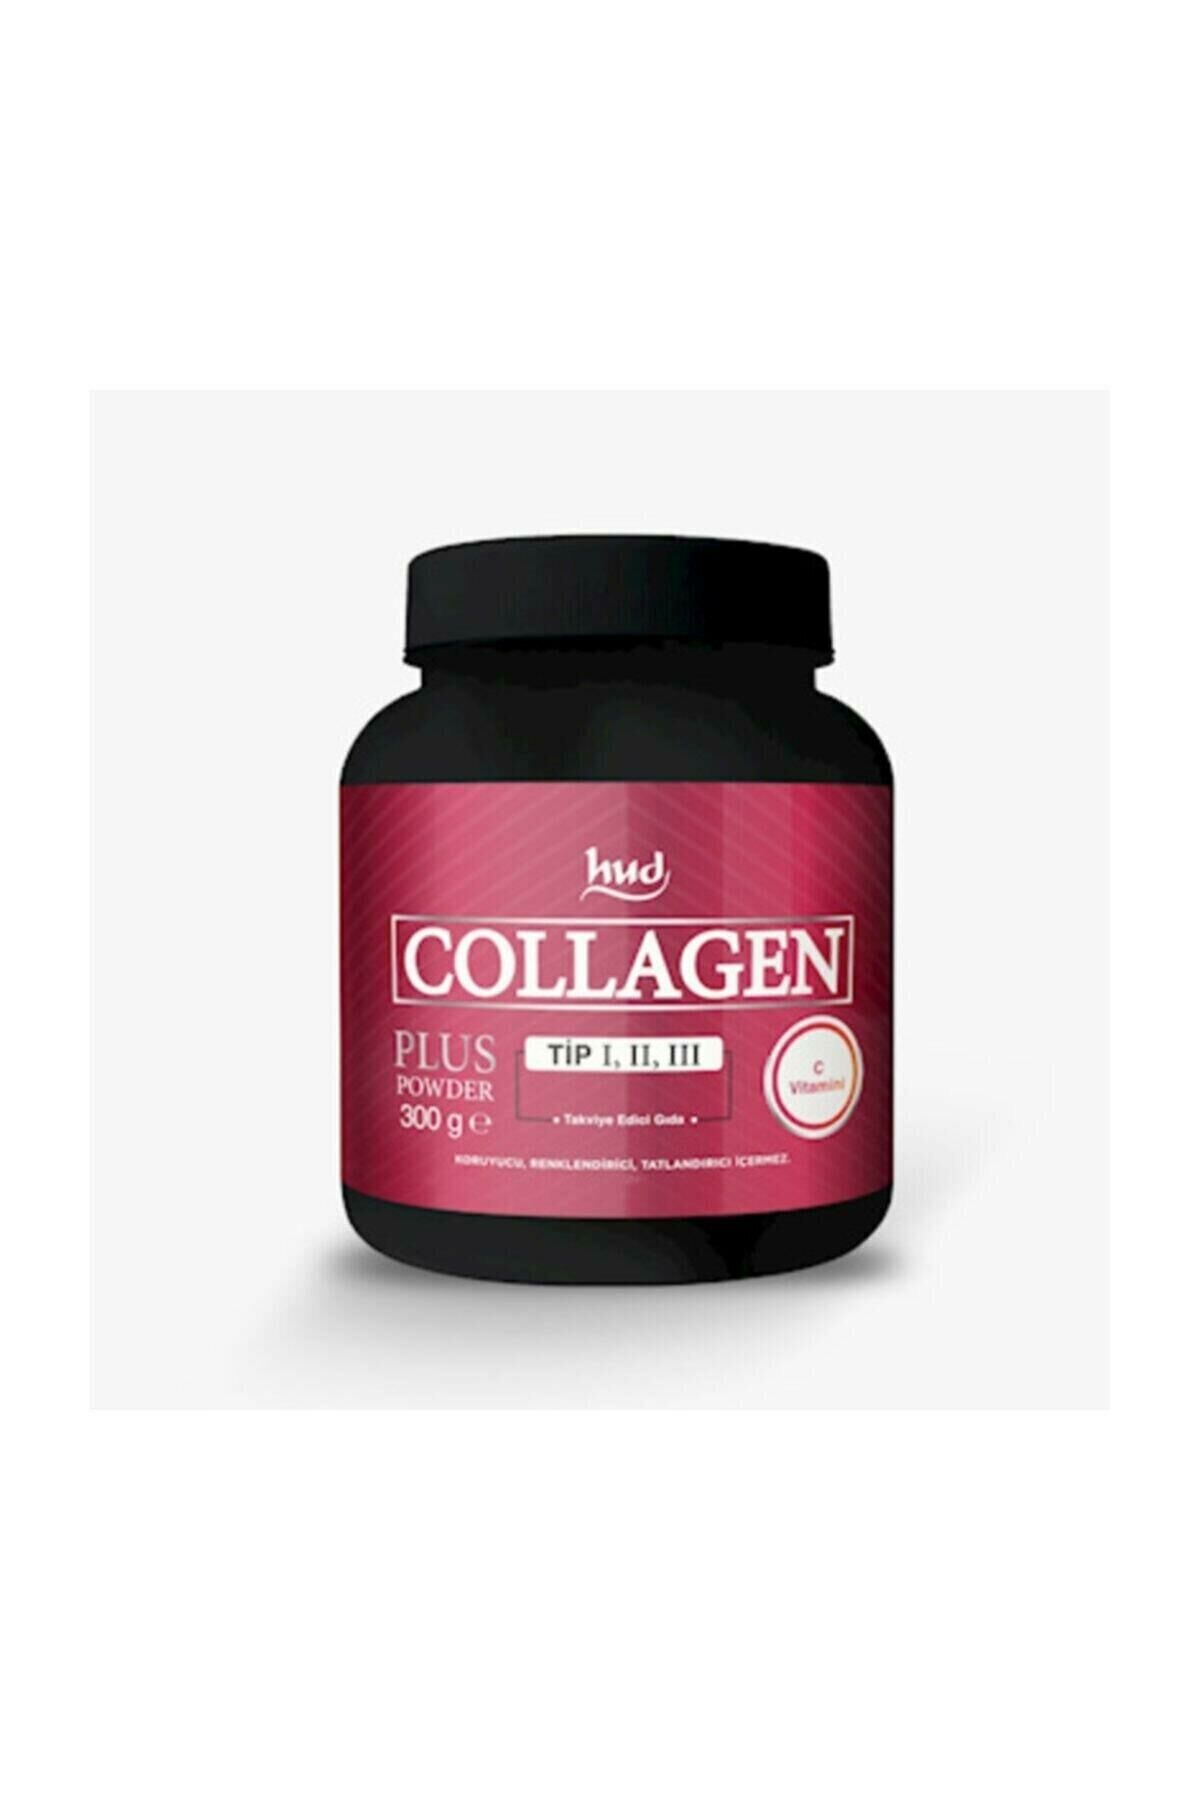 Hud Destek Collagen Plus Powder 300 Gr